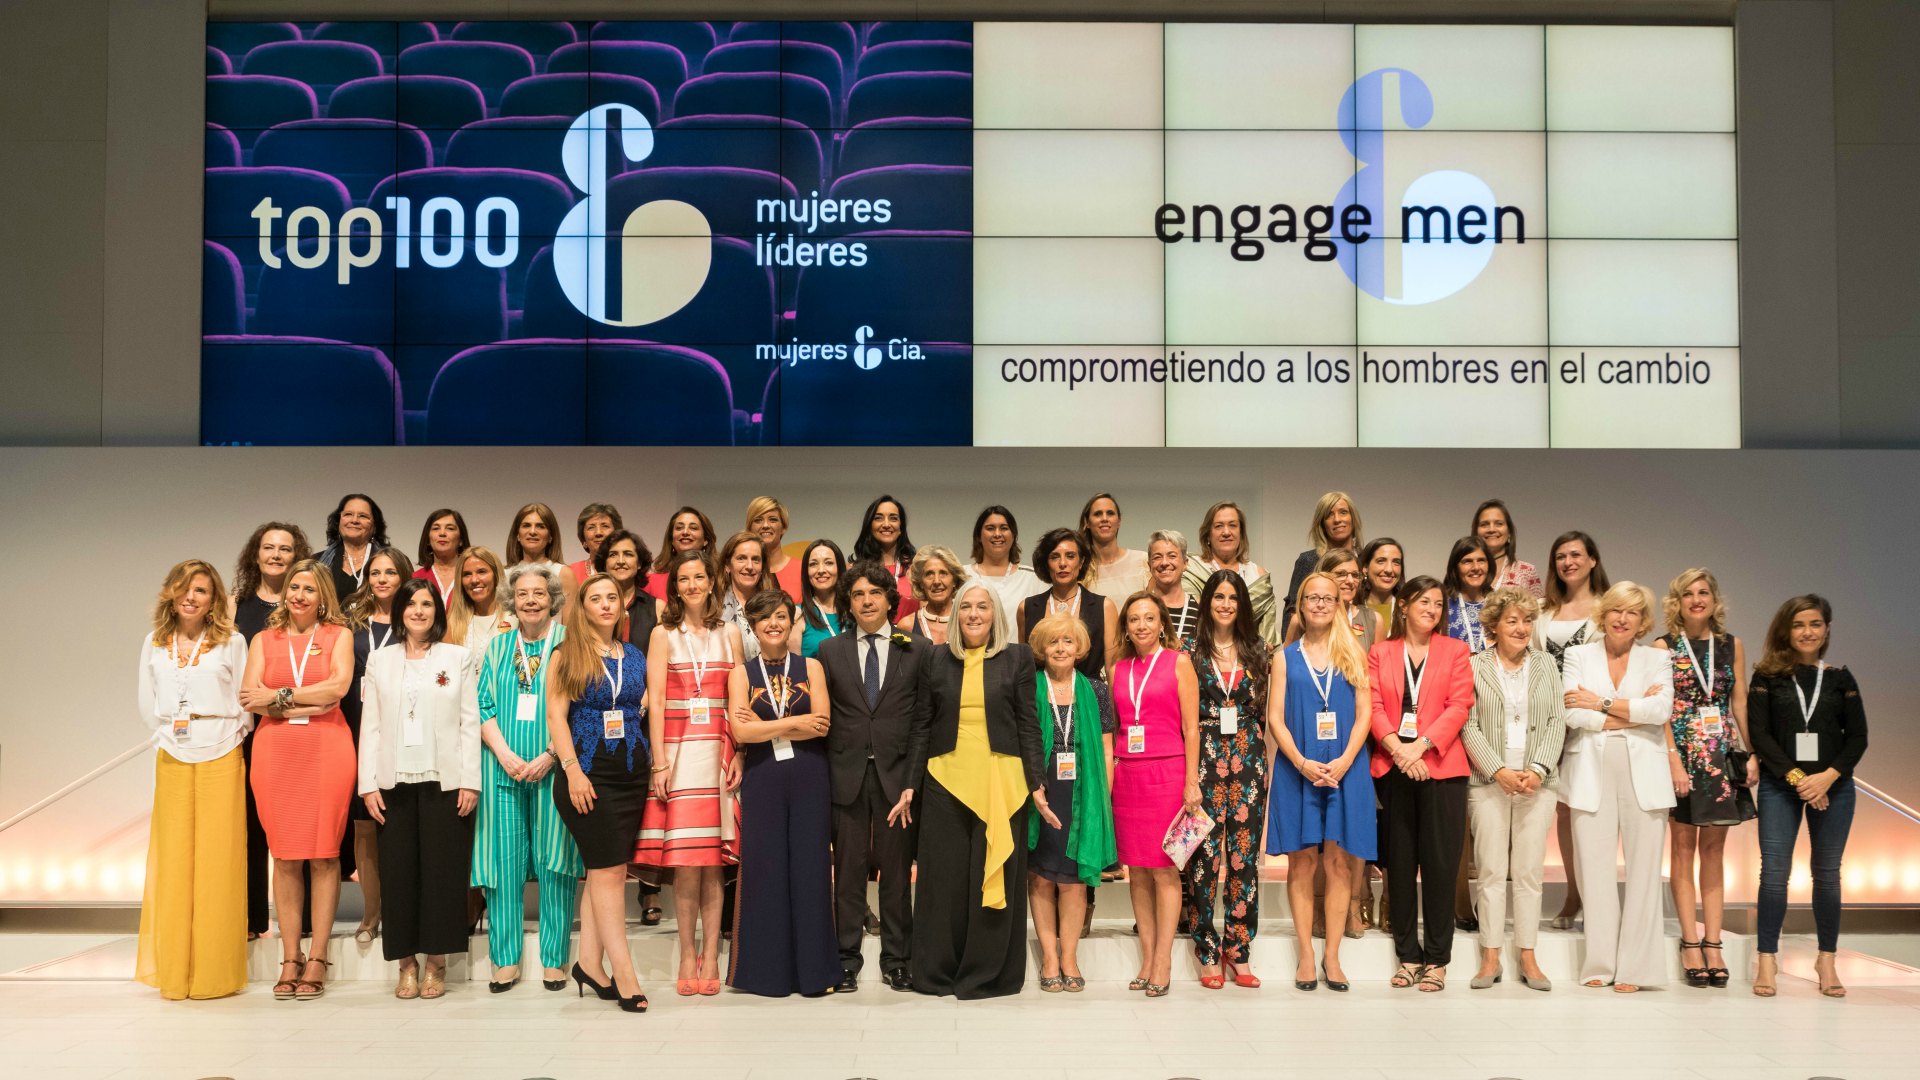 Este es el Top 100 de mujeres líderes en España